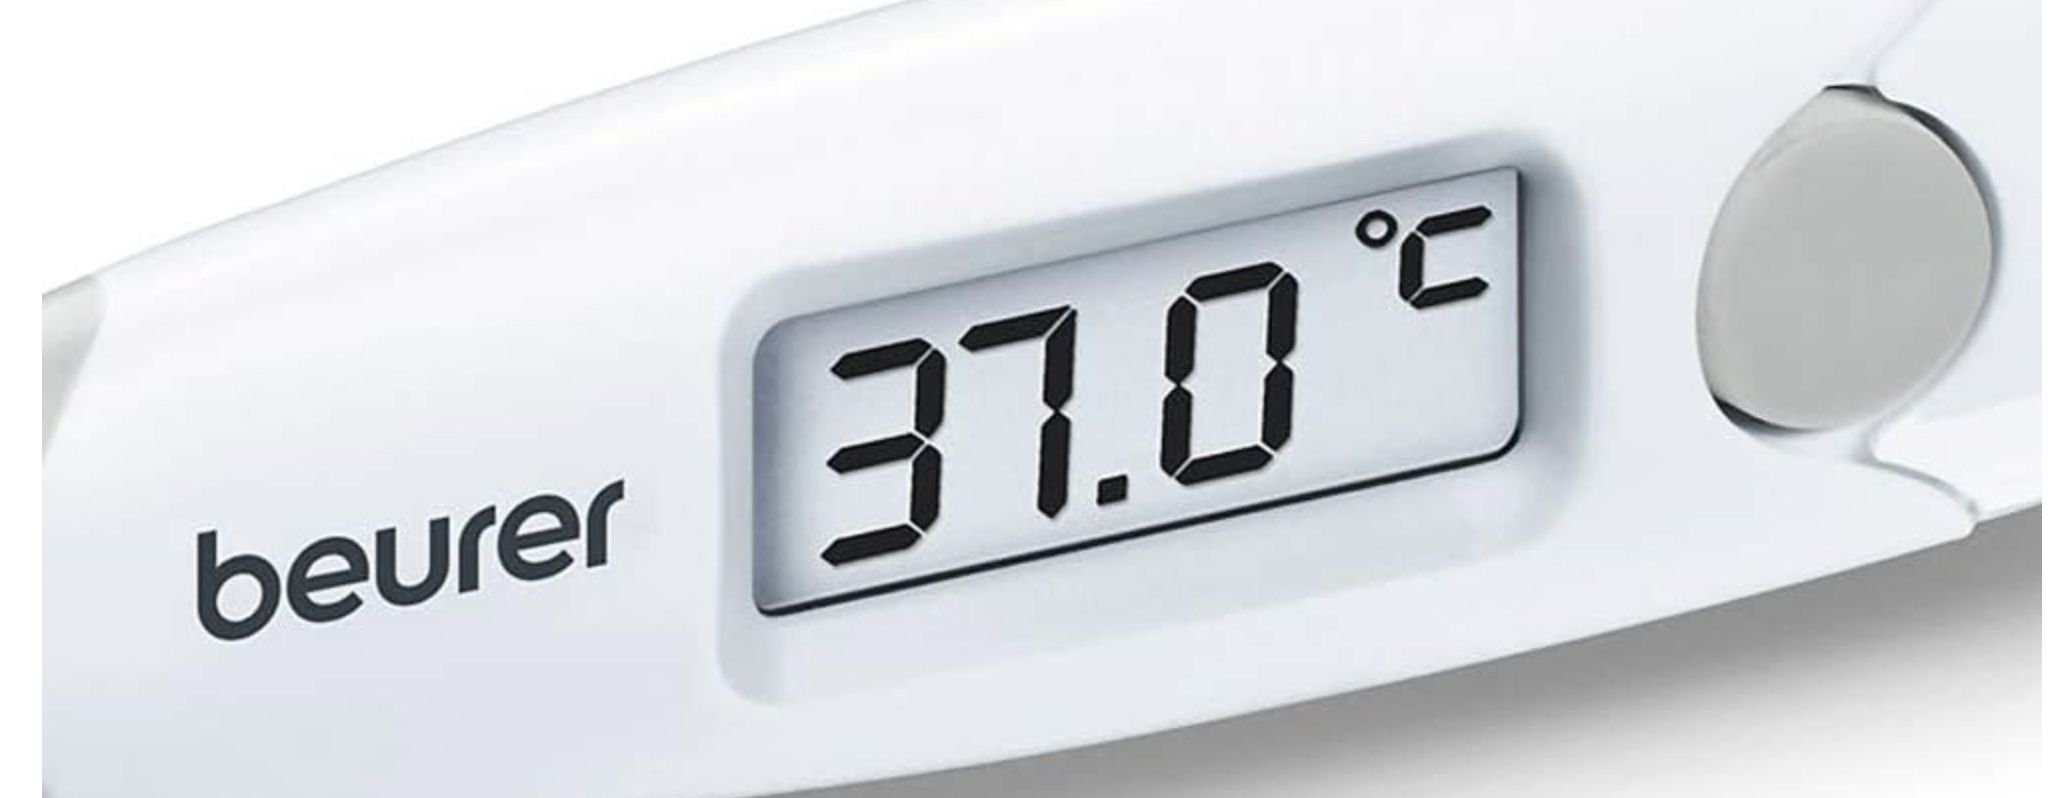 Beurer FT 13 wasserdichtes Flexibles digitales Thermometer für 3,99€ (statt 6€)   Prime